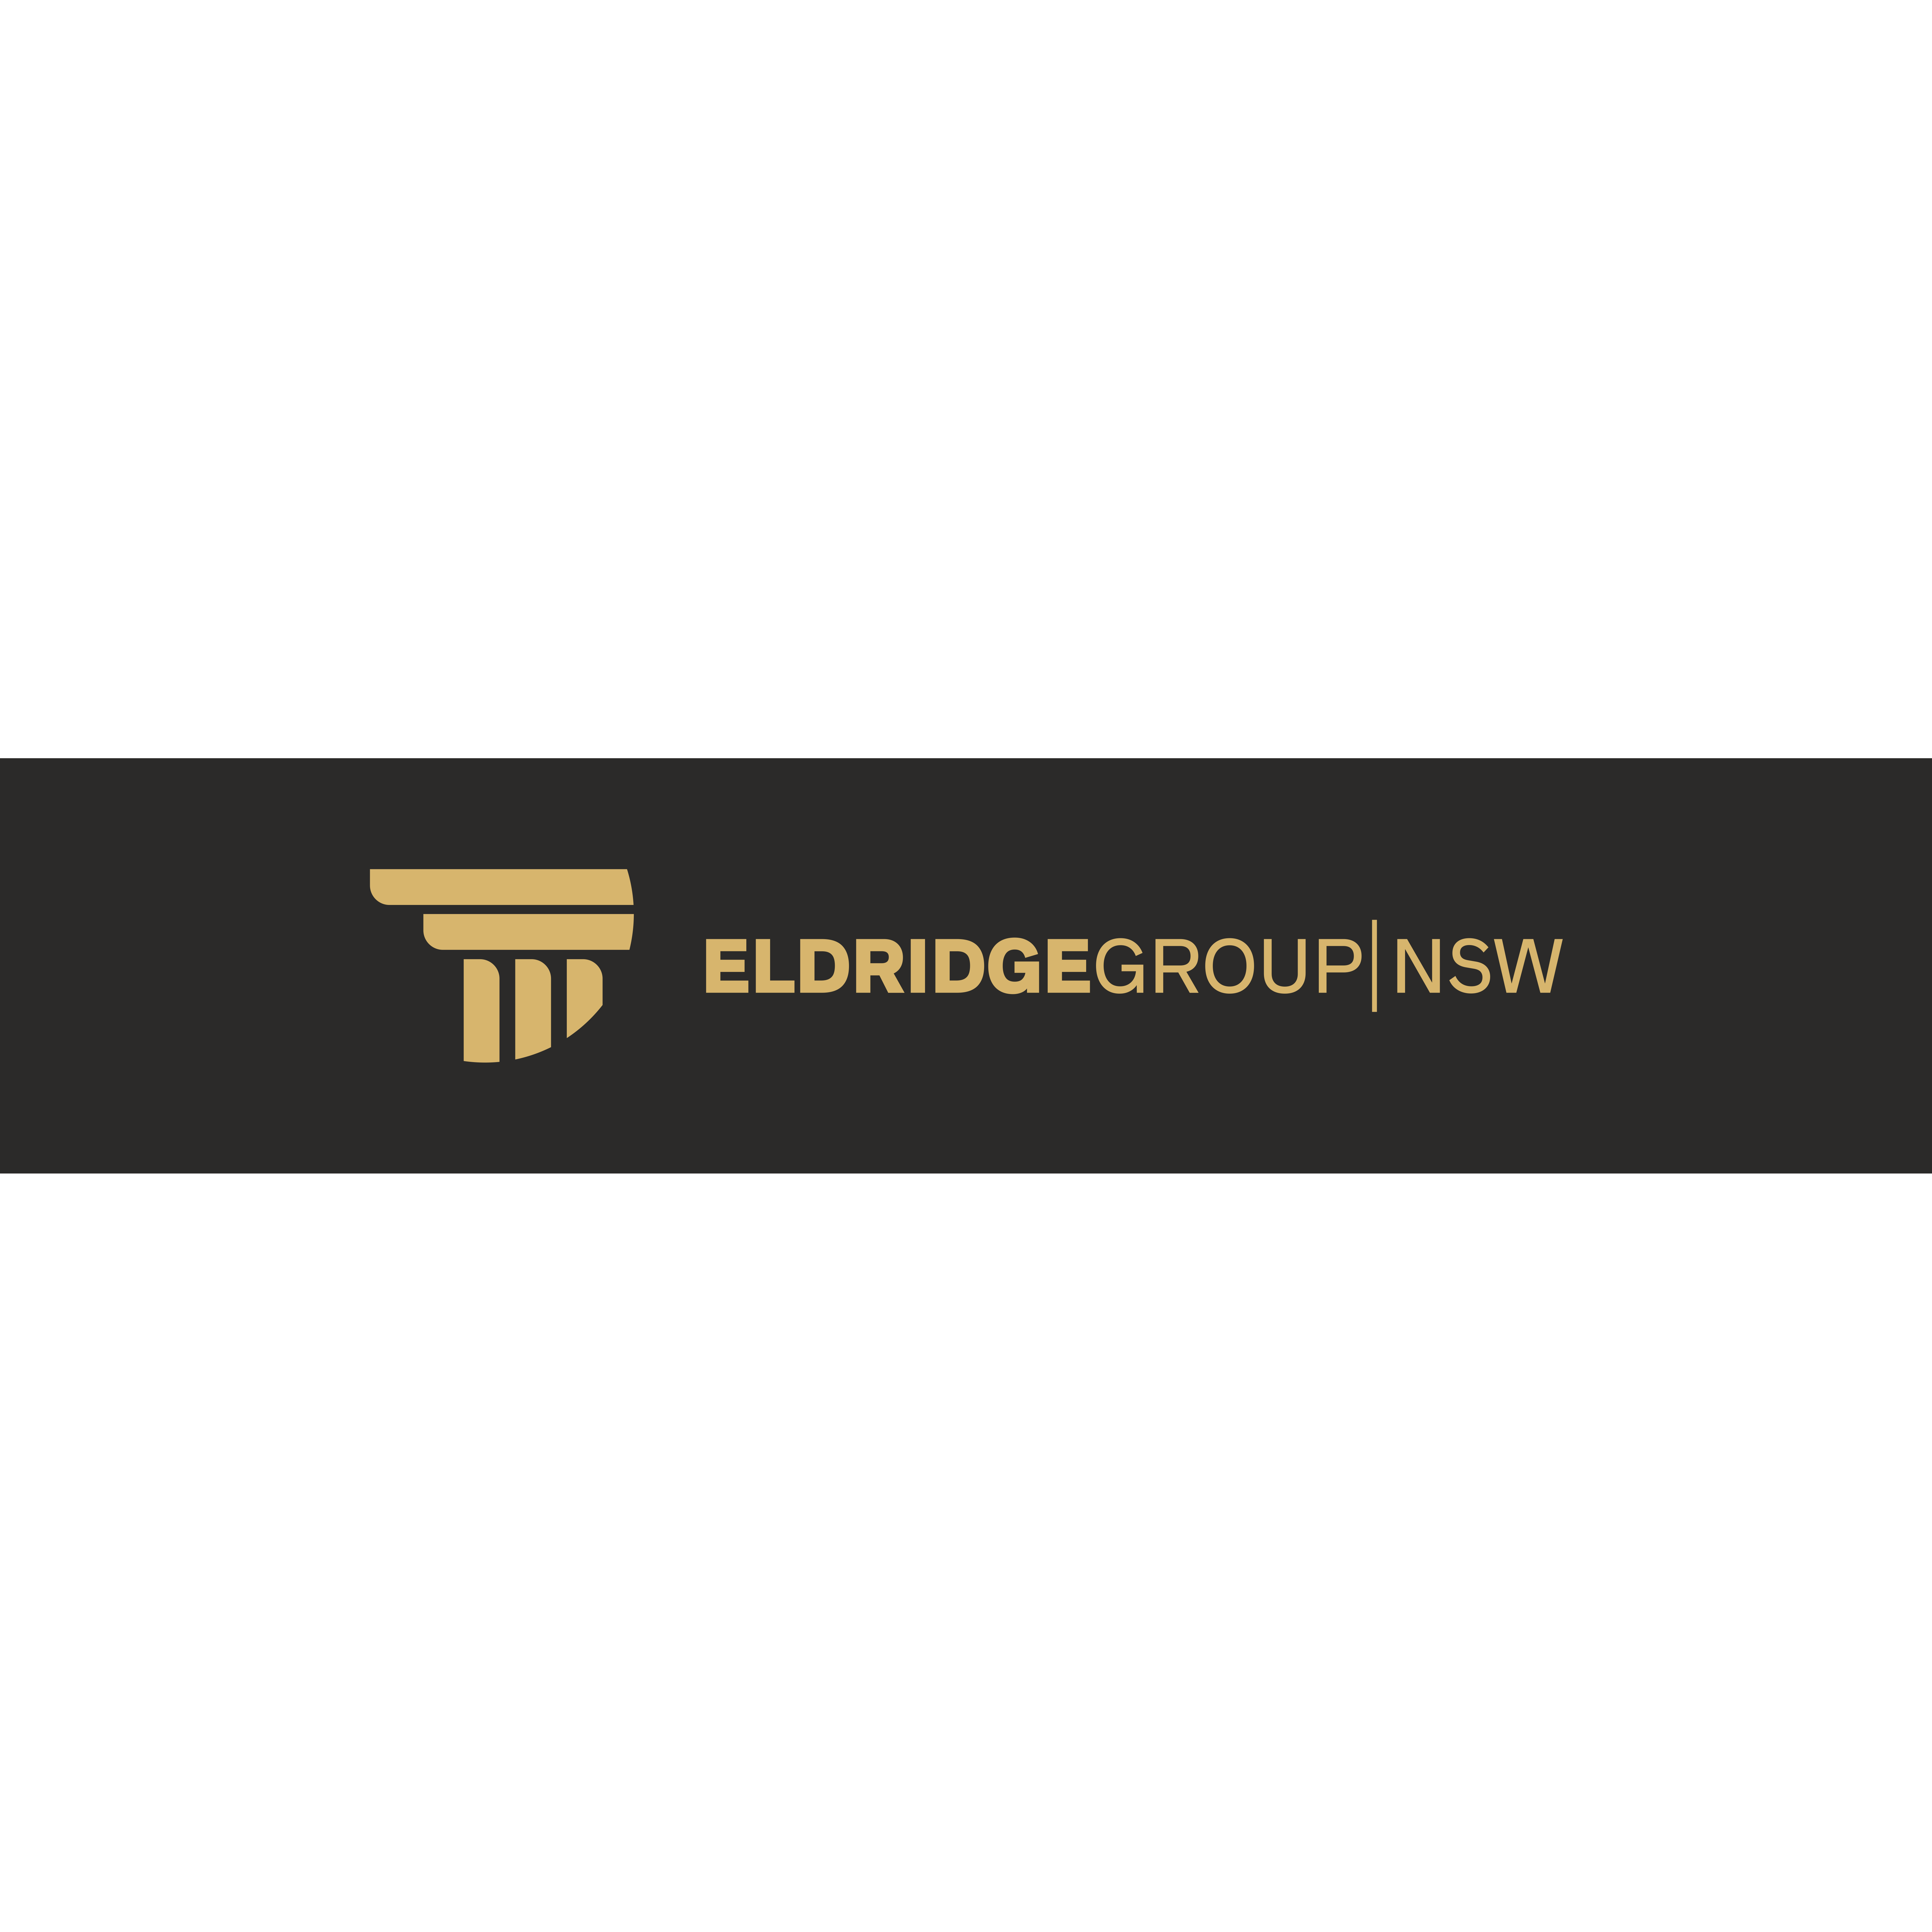 Eldridge Group NSW Parramatta